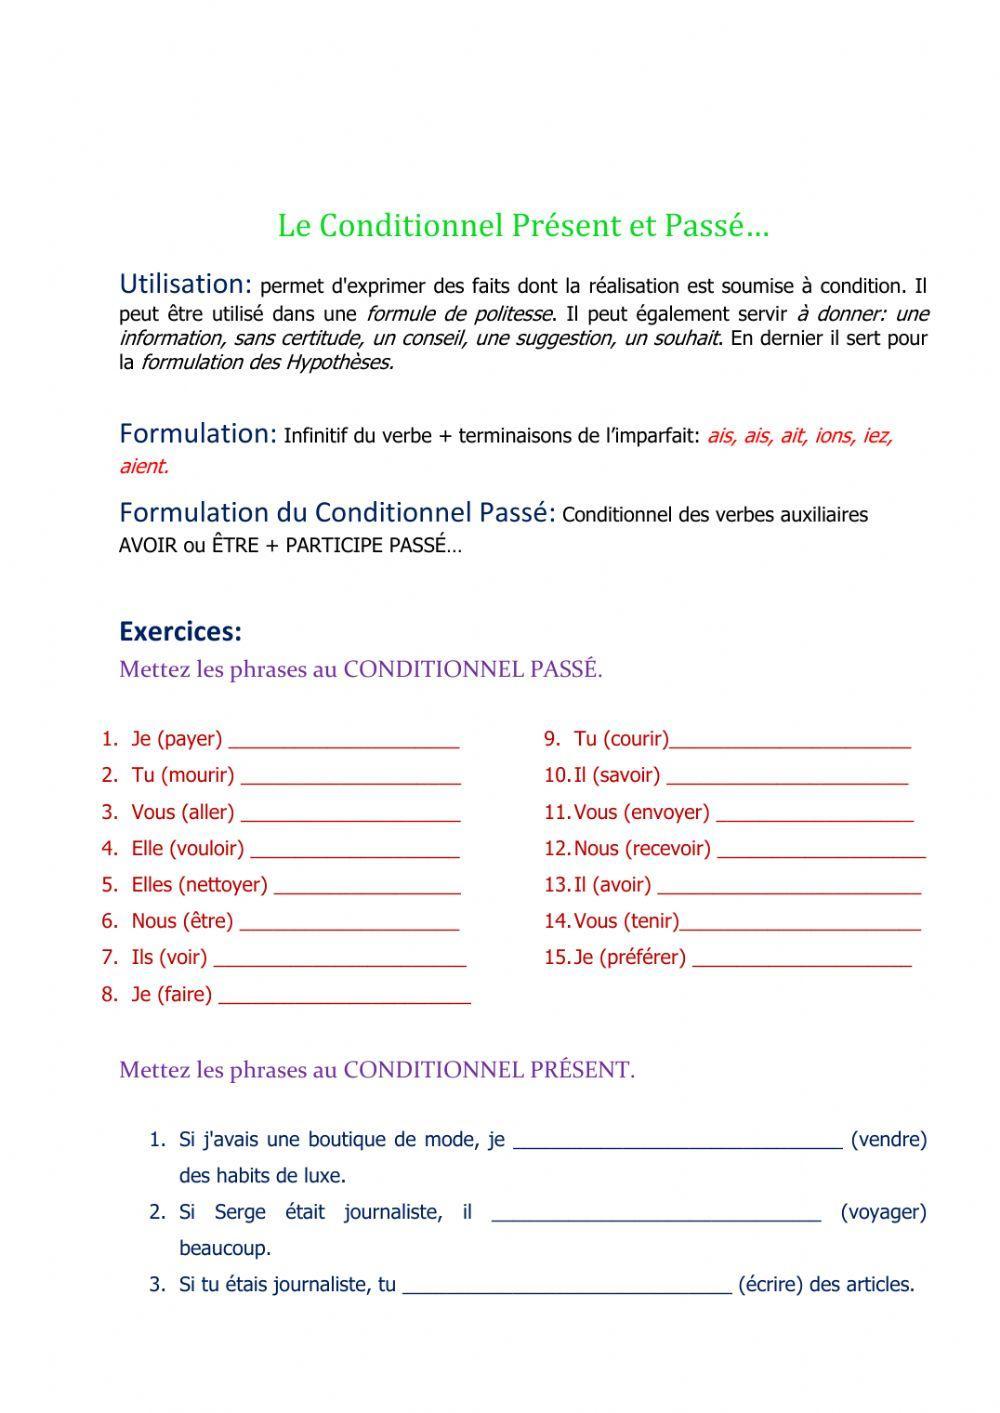 Conditionnel Présent et Passé interactive worksheet | Live Worksheets